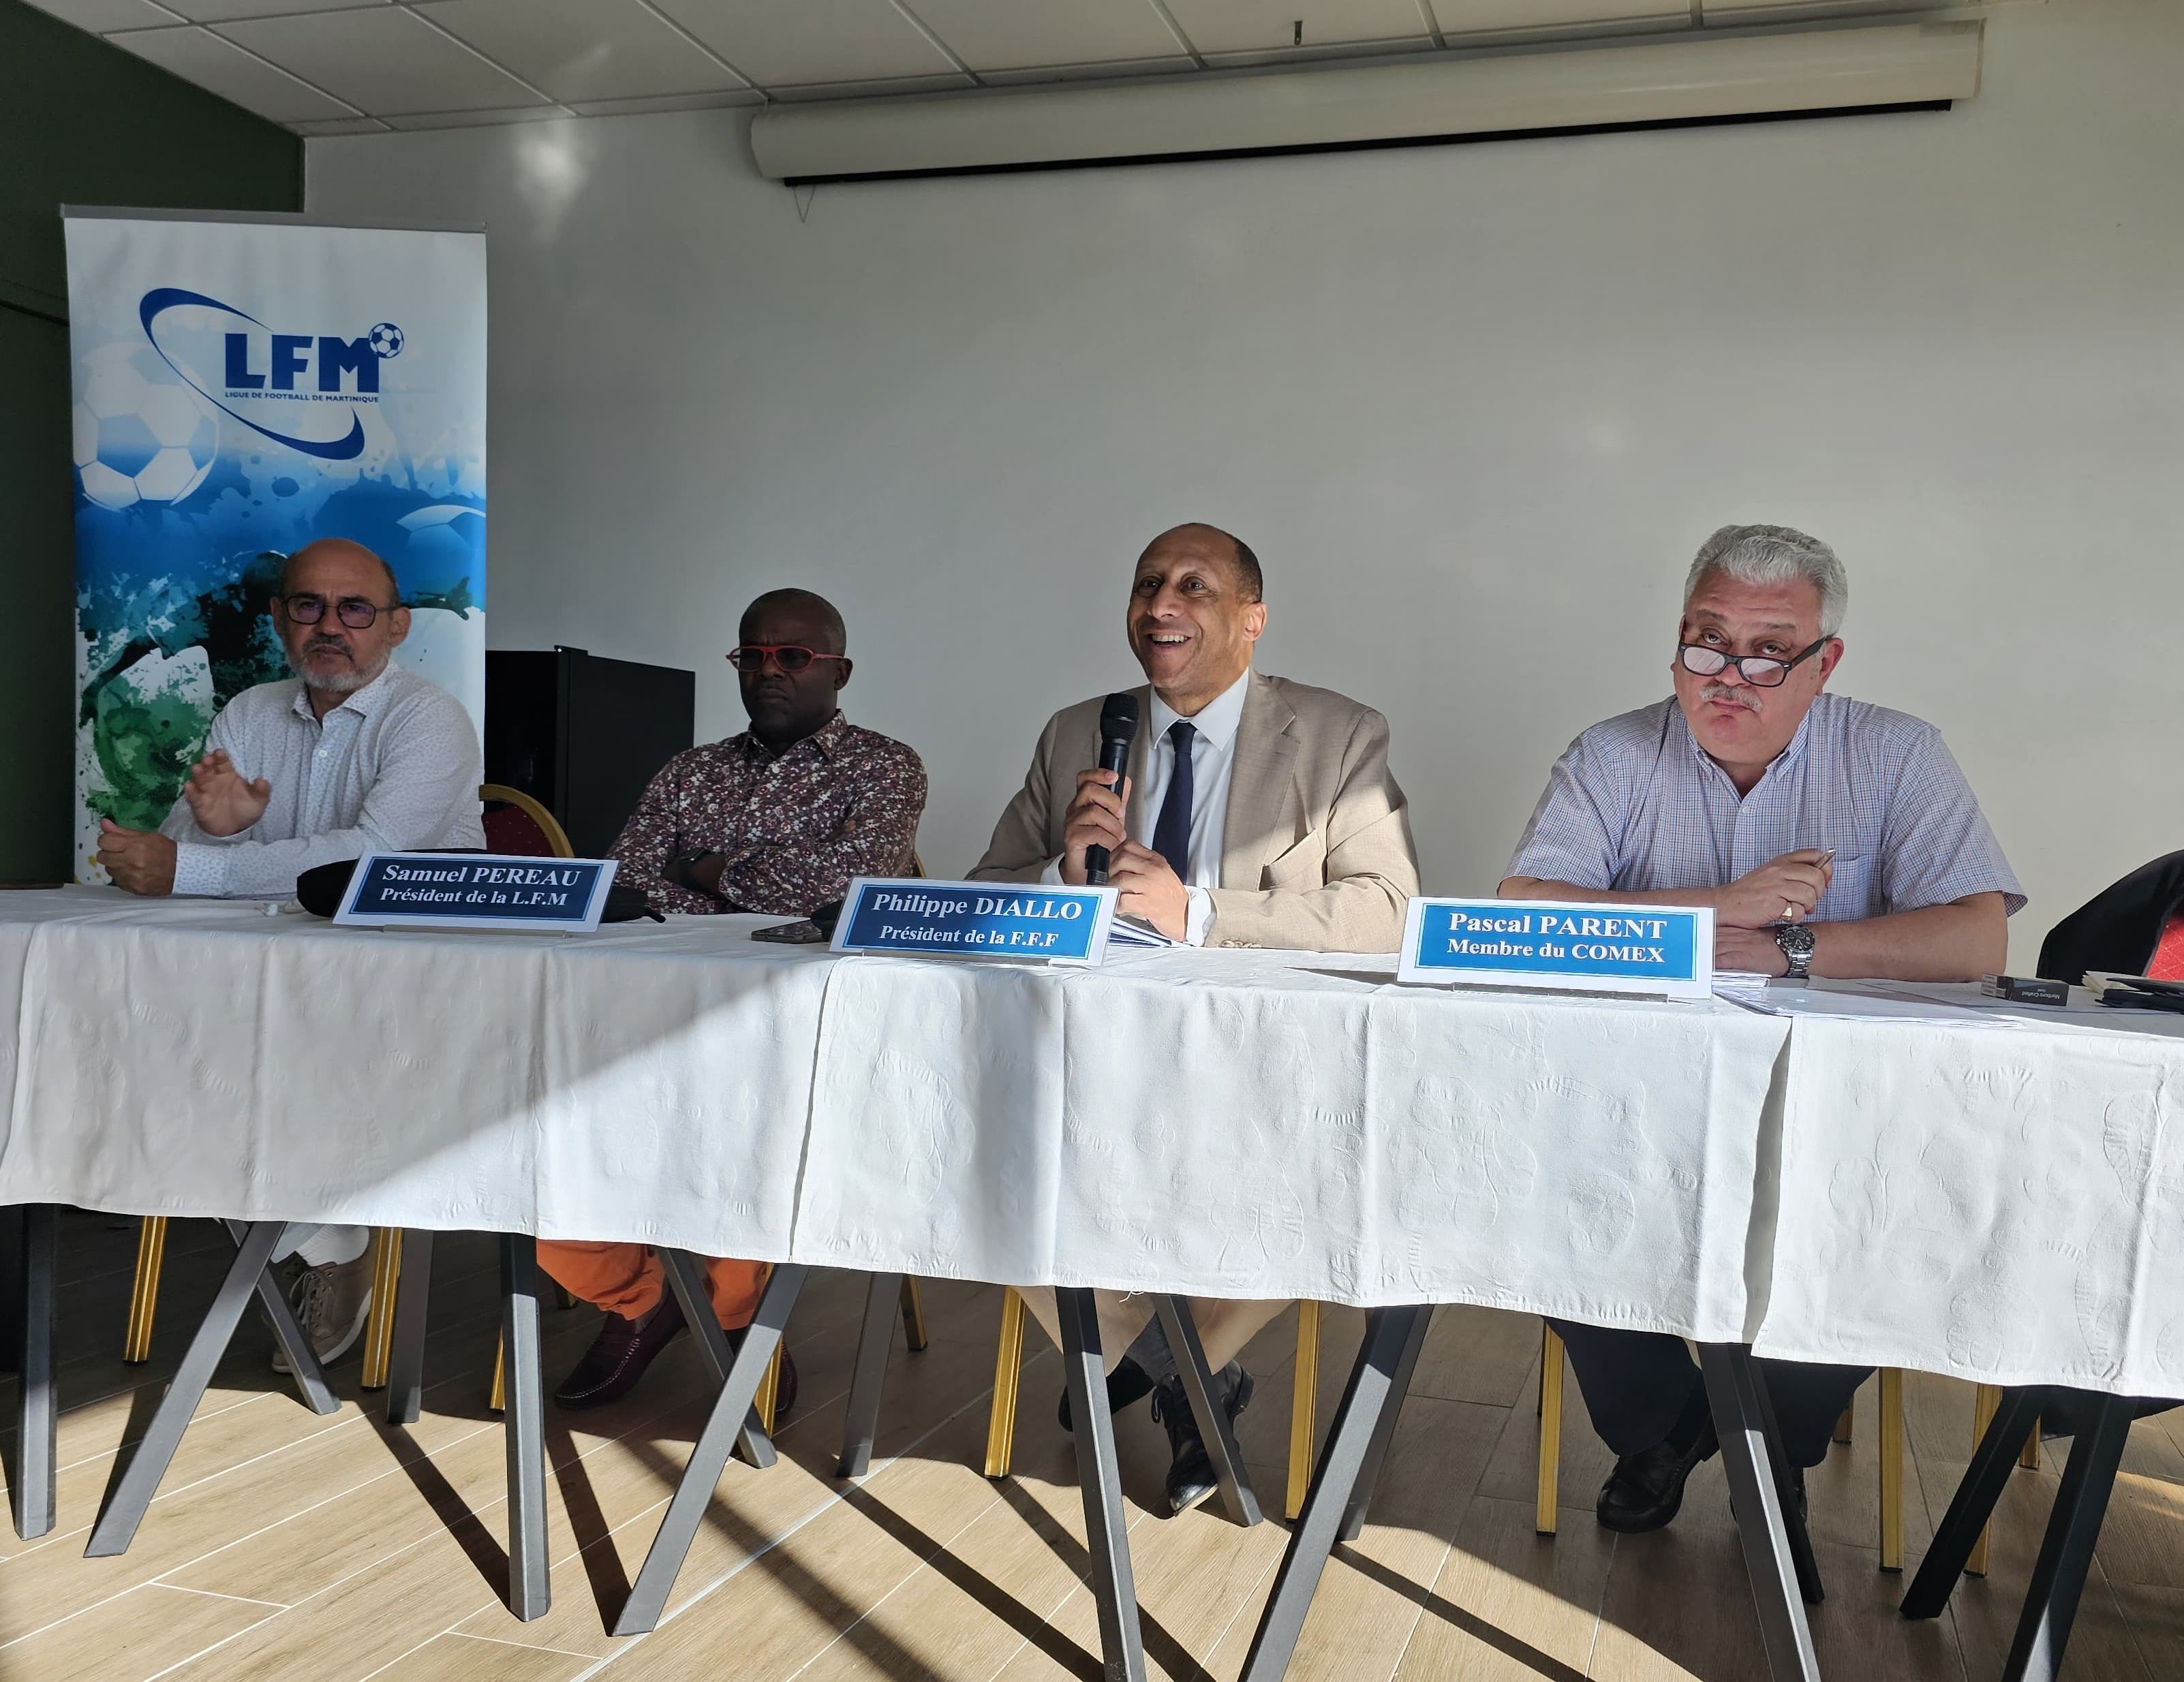     Philippe Diallo, le président de la Fédération française de football est en Martinique

